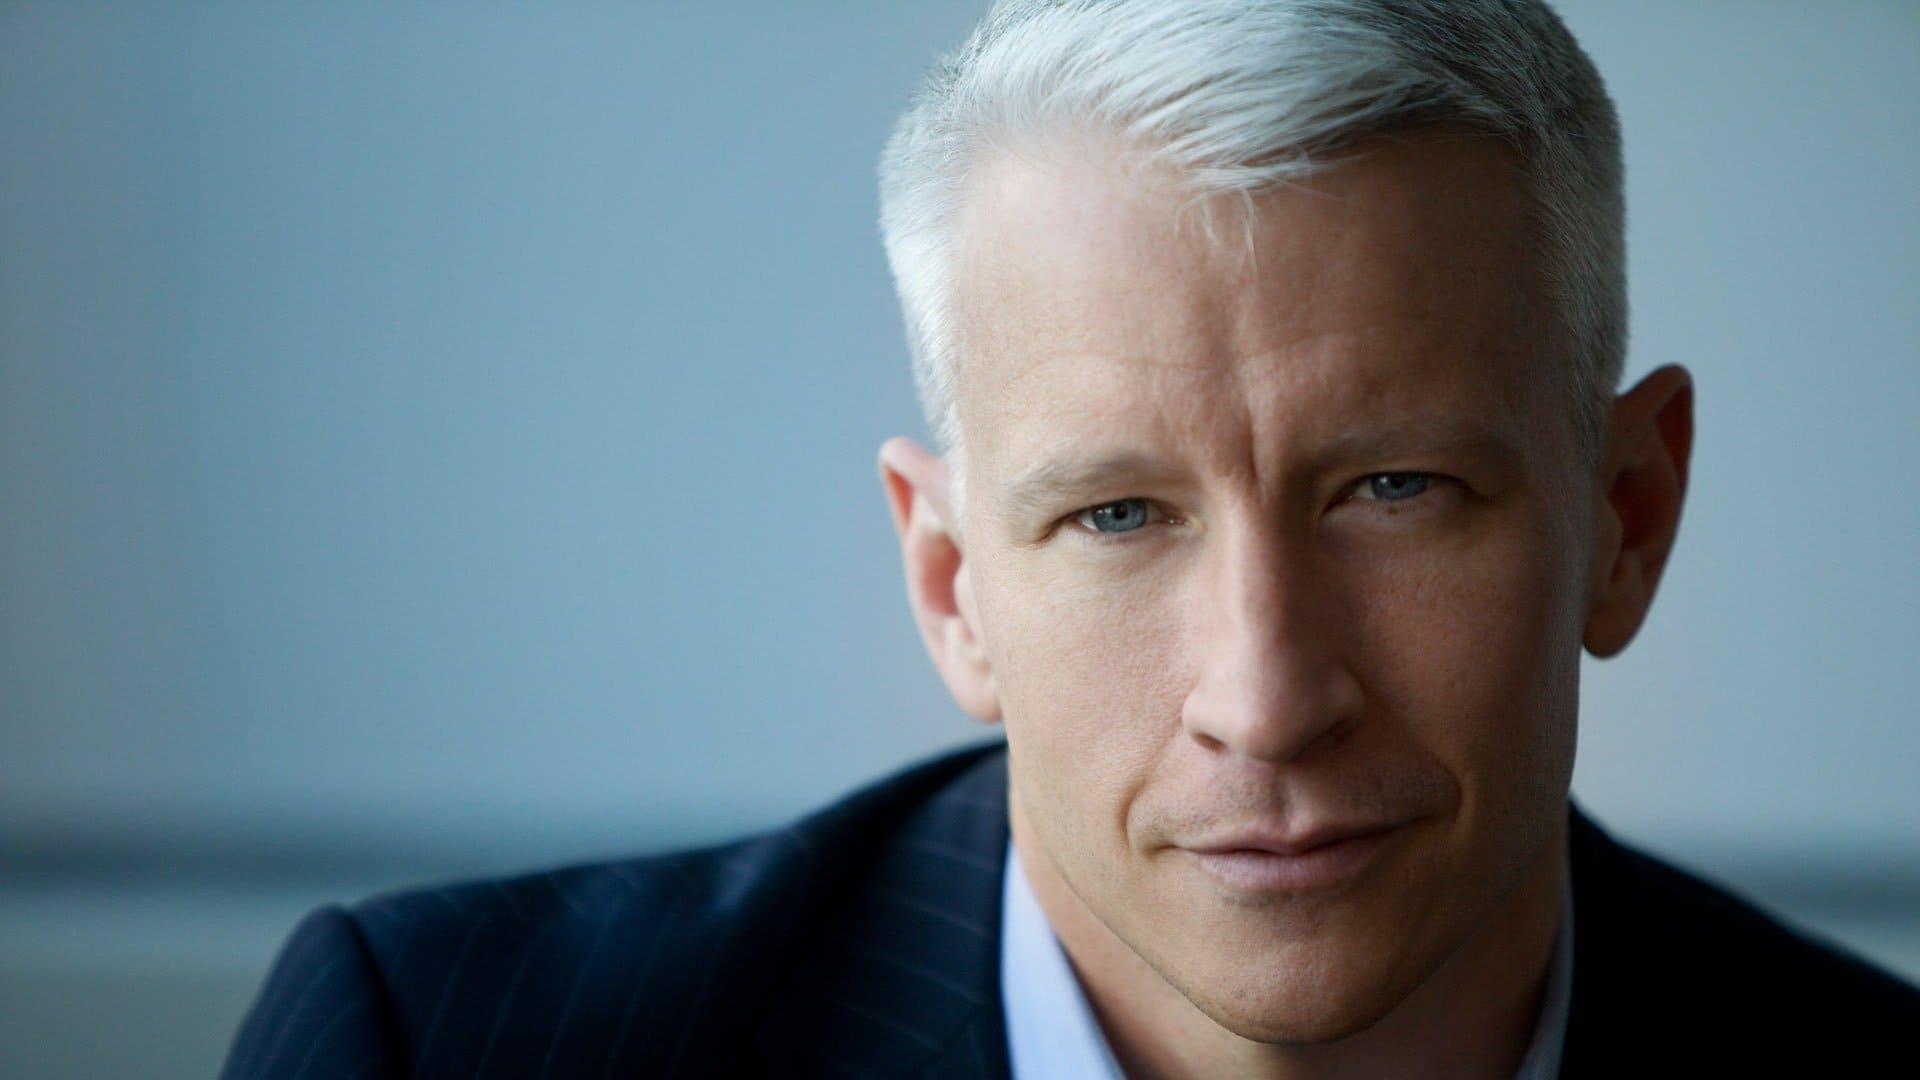 Anderson Cooper 360° backdrop